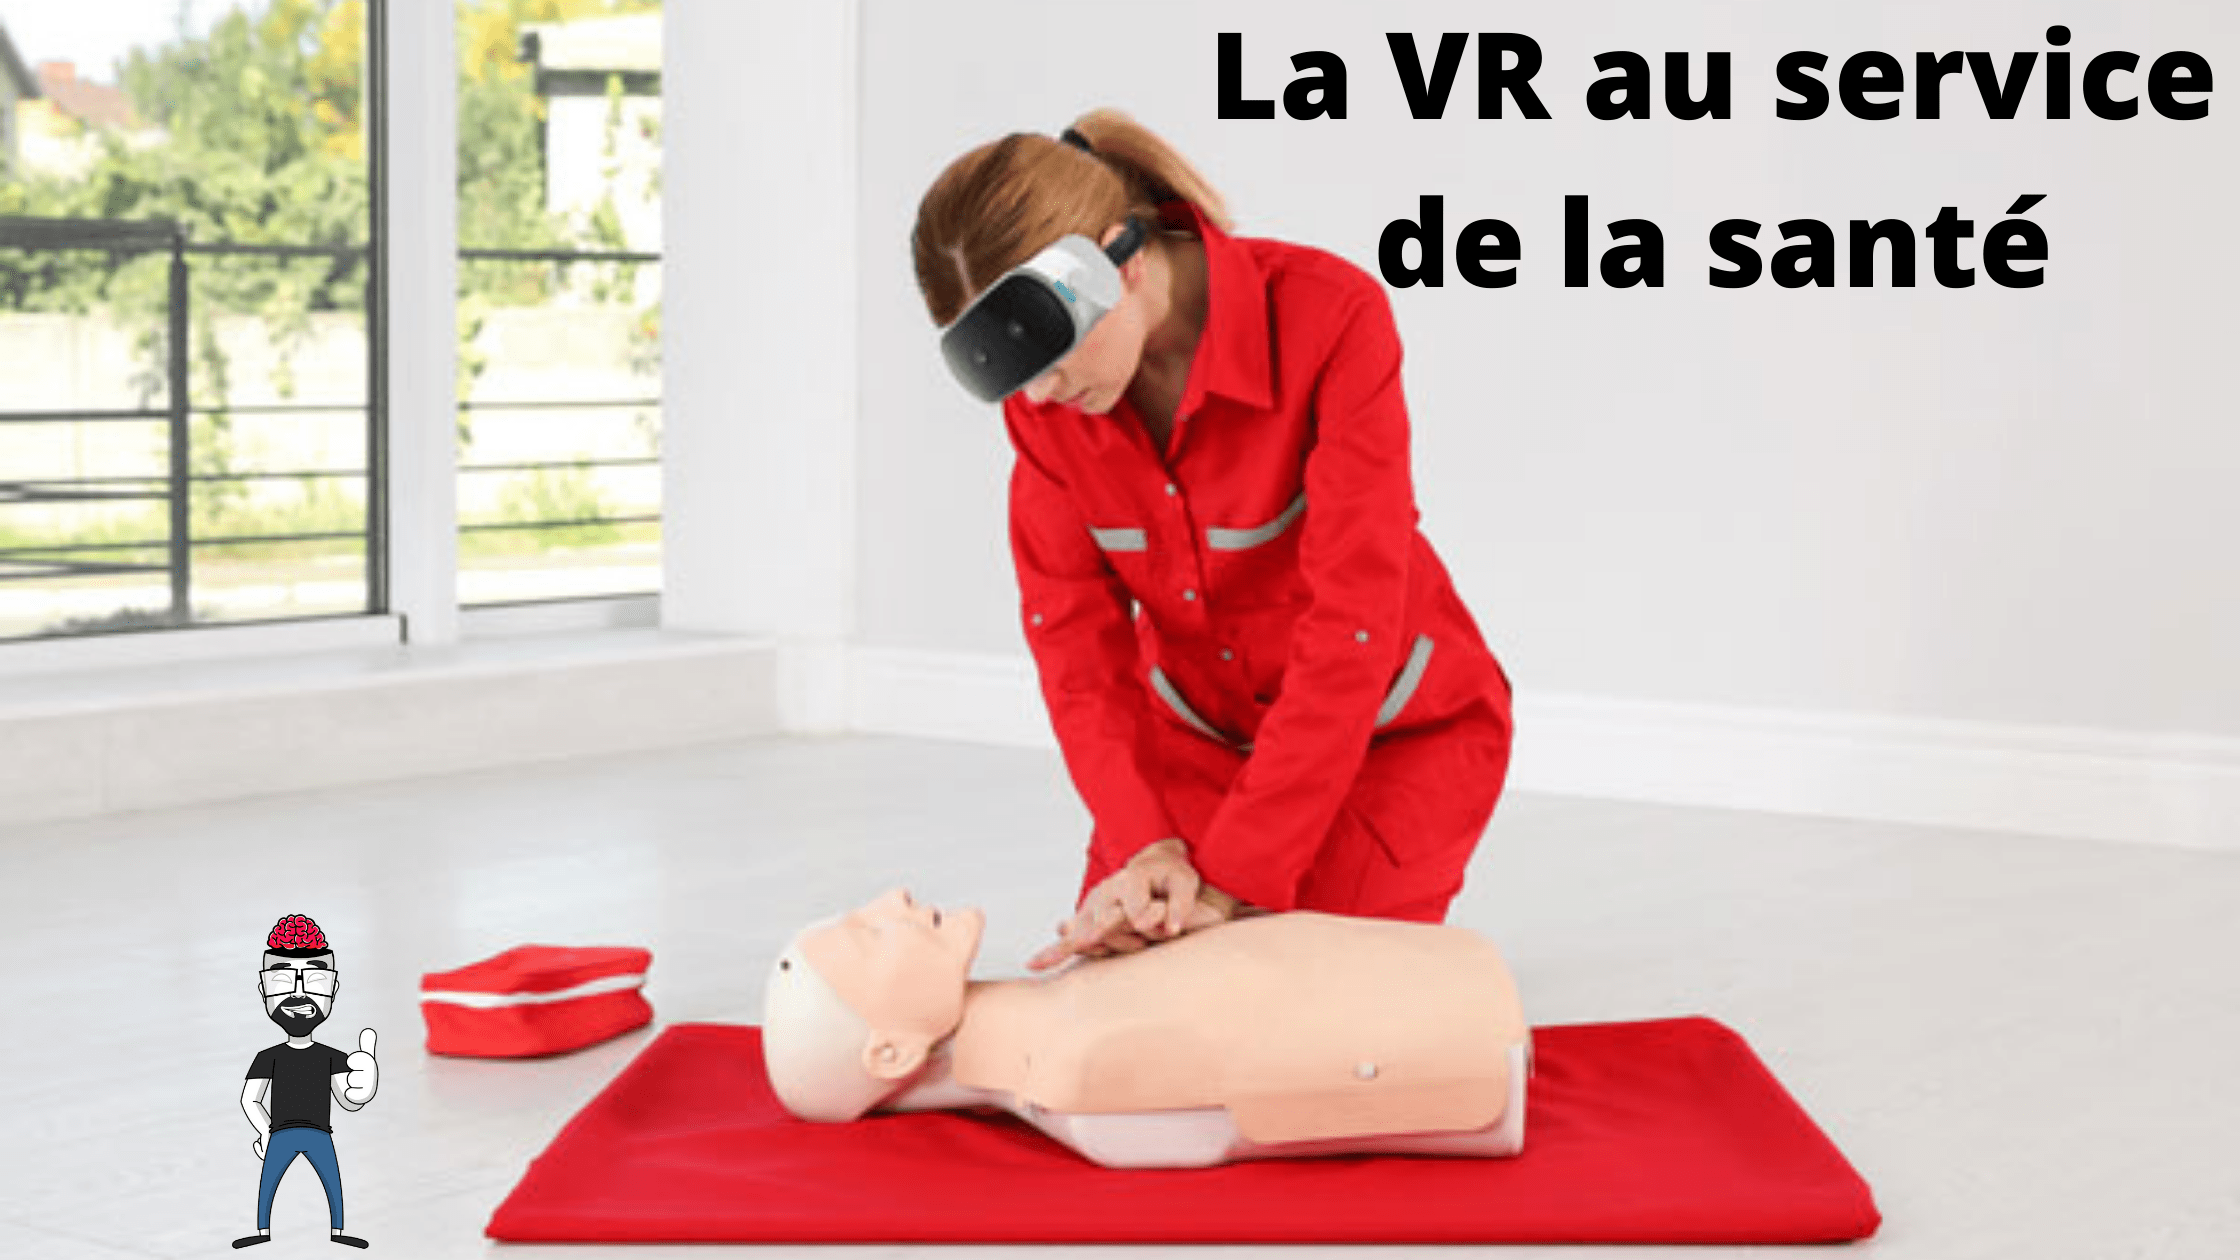 La VR au service de la santé